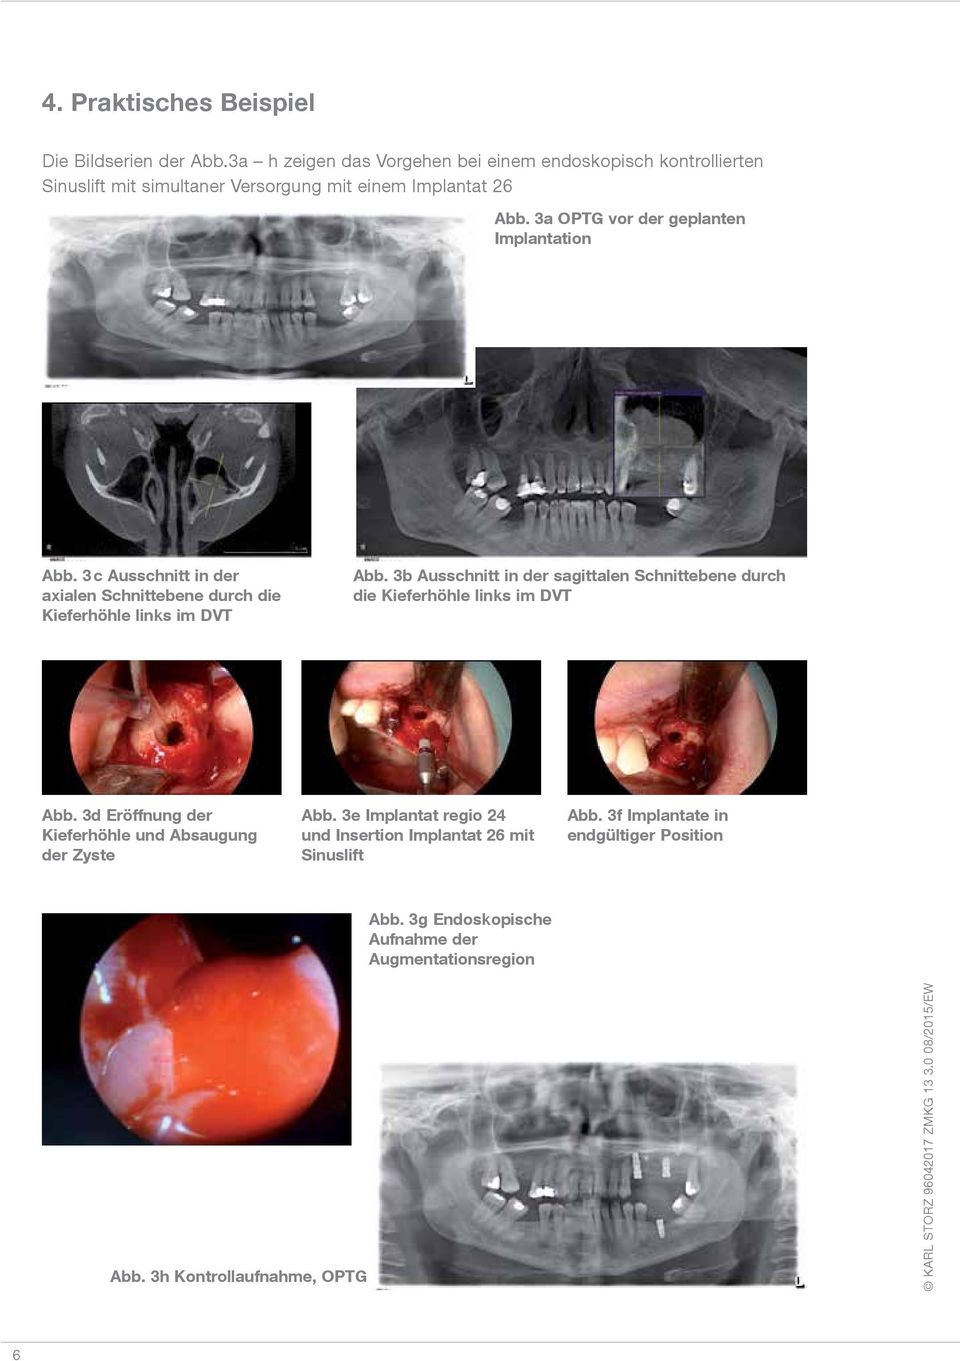 3a OPTG vor der geplanten Implantation Abb. 3 c Ausschnitt in der axialen Schnittebene durch die Kieferhöhle links im DVT Abb.